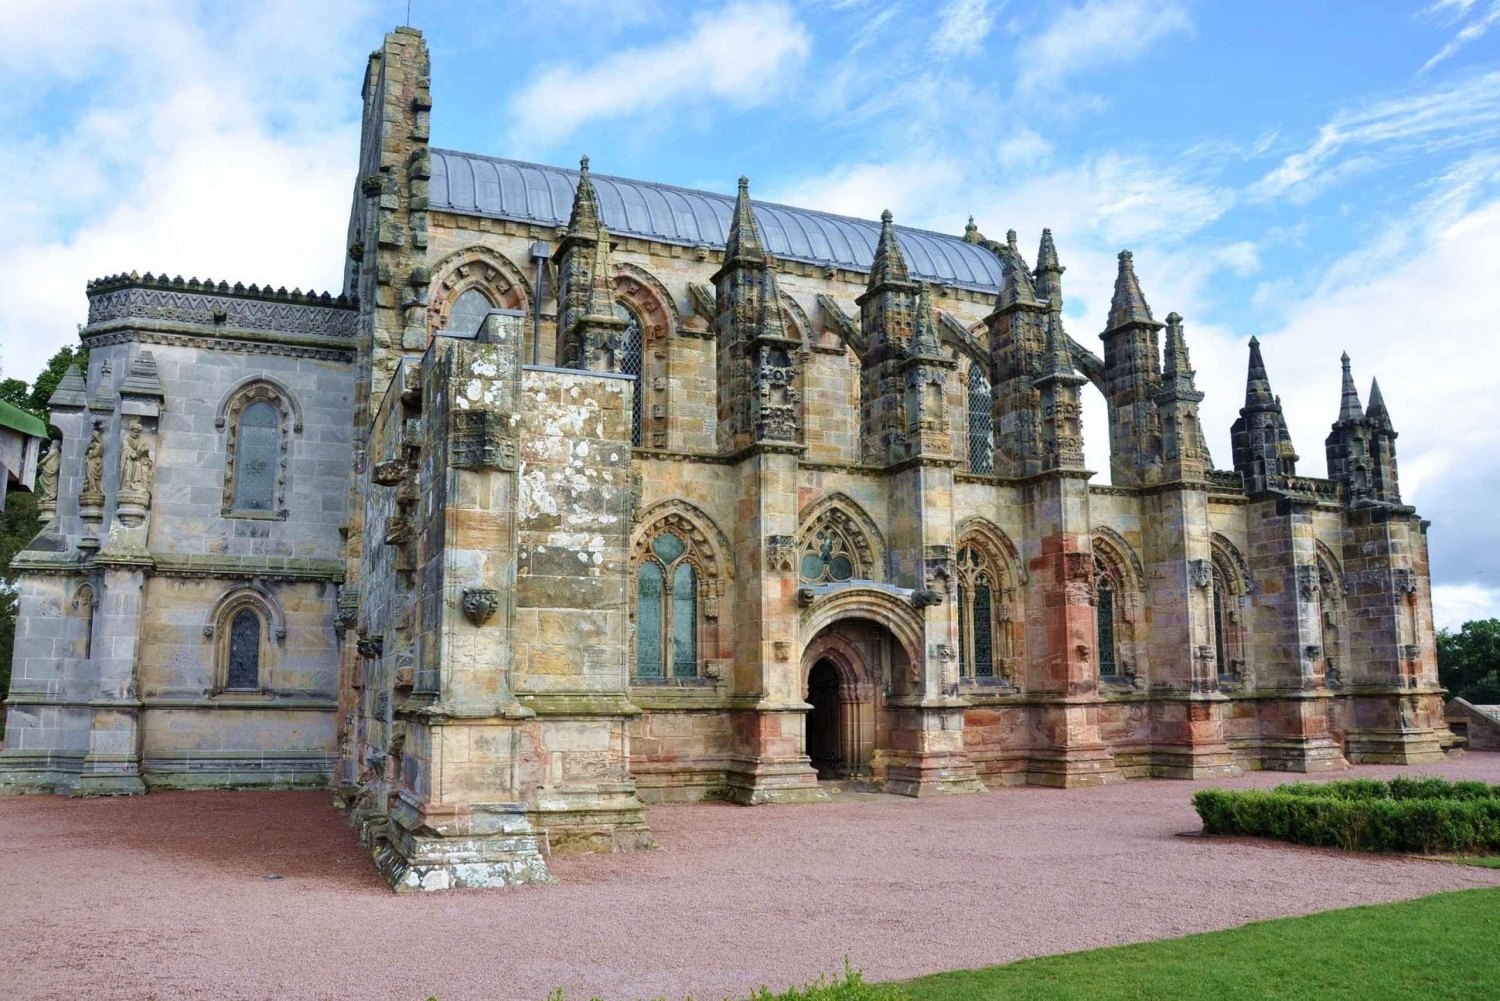 Excursão à Rosslyn Chapel e Scottish Borders saindo de Edimburgo